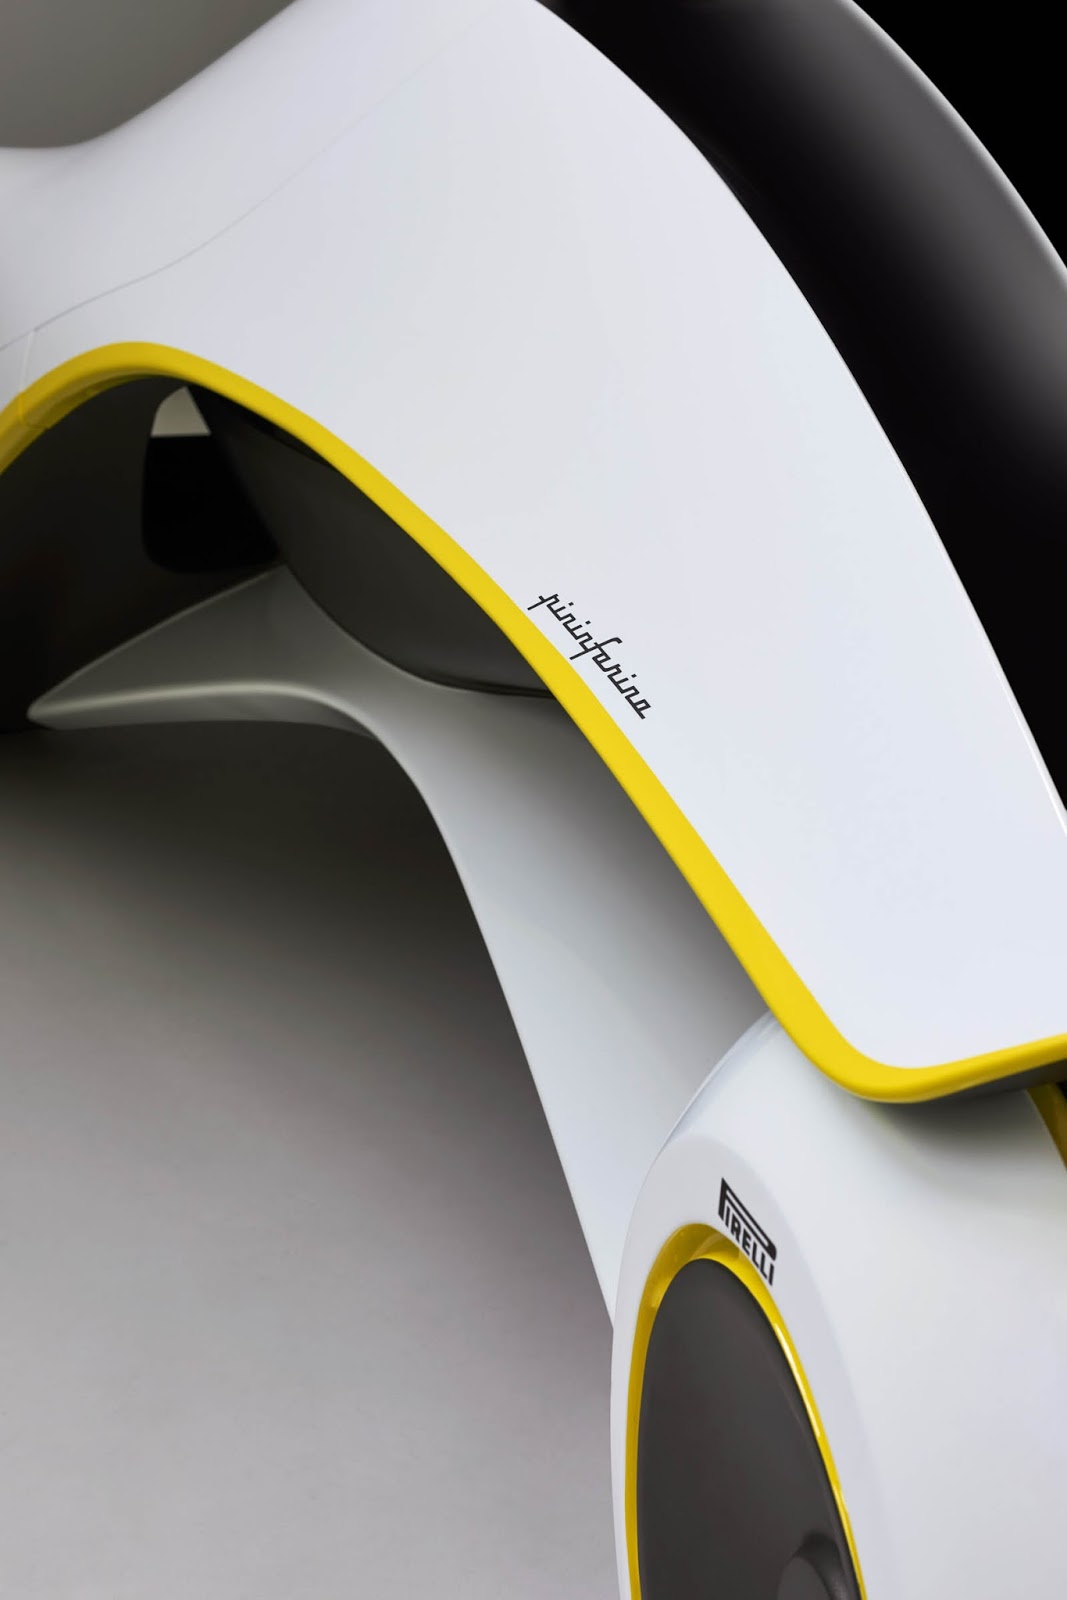 IED Scilla Concept, 2017